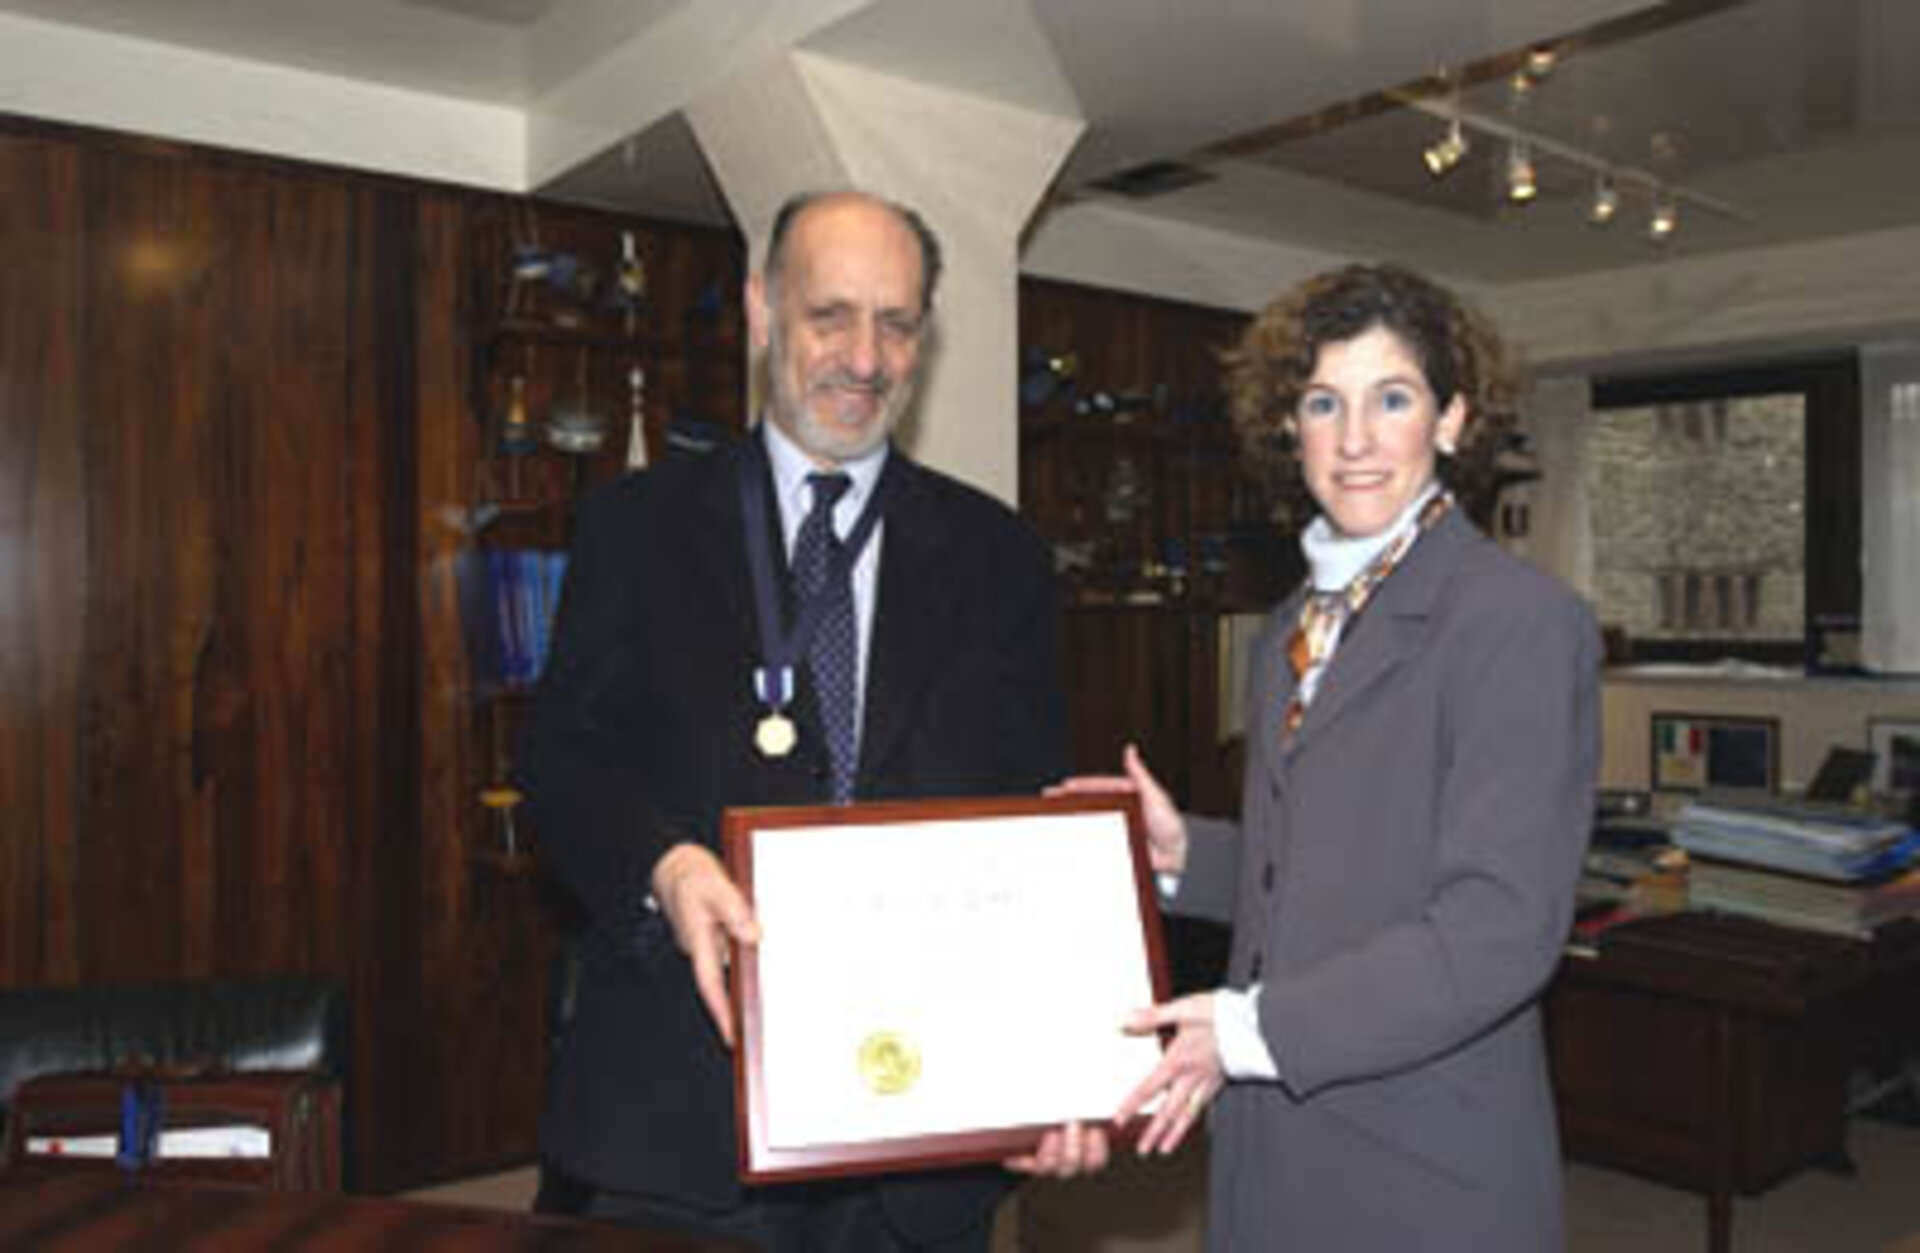 Antonio Rodotà was awarded the NASA Distinguished Public Service Medal